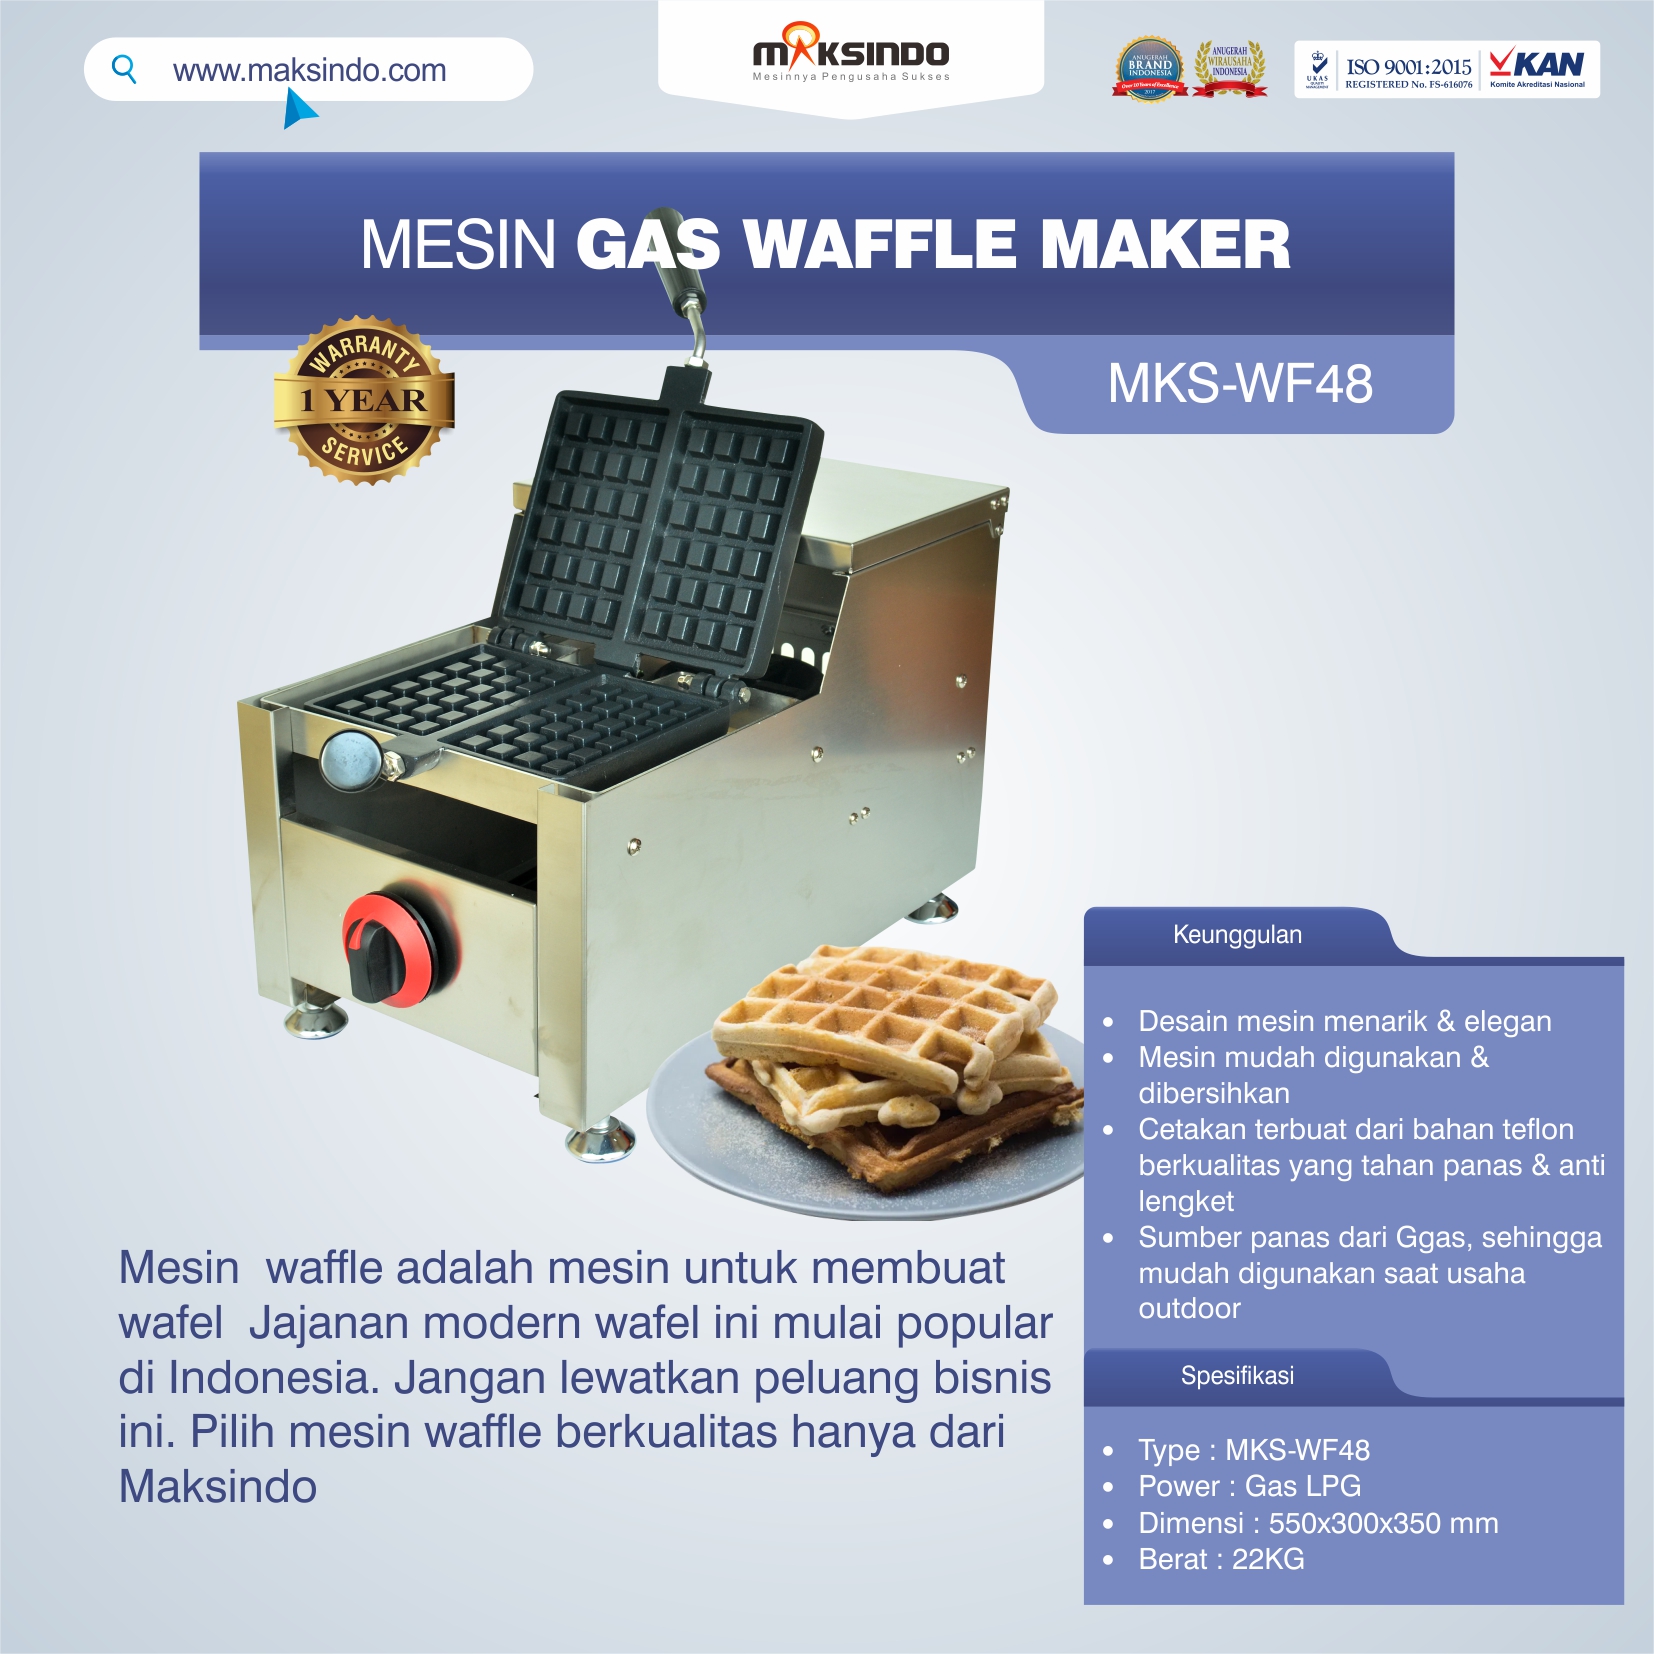 Jual Mesin Gas Waffle Maker MKS-WF48 di Bekasi